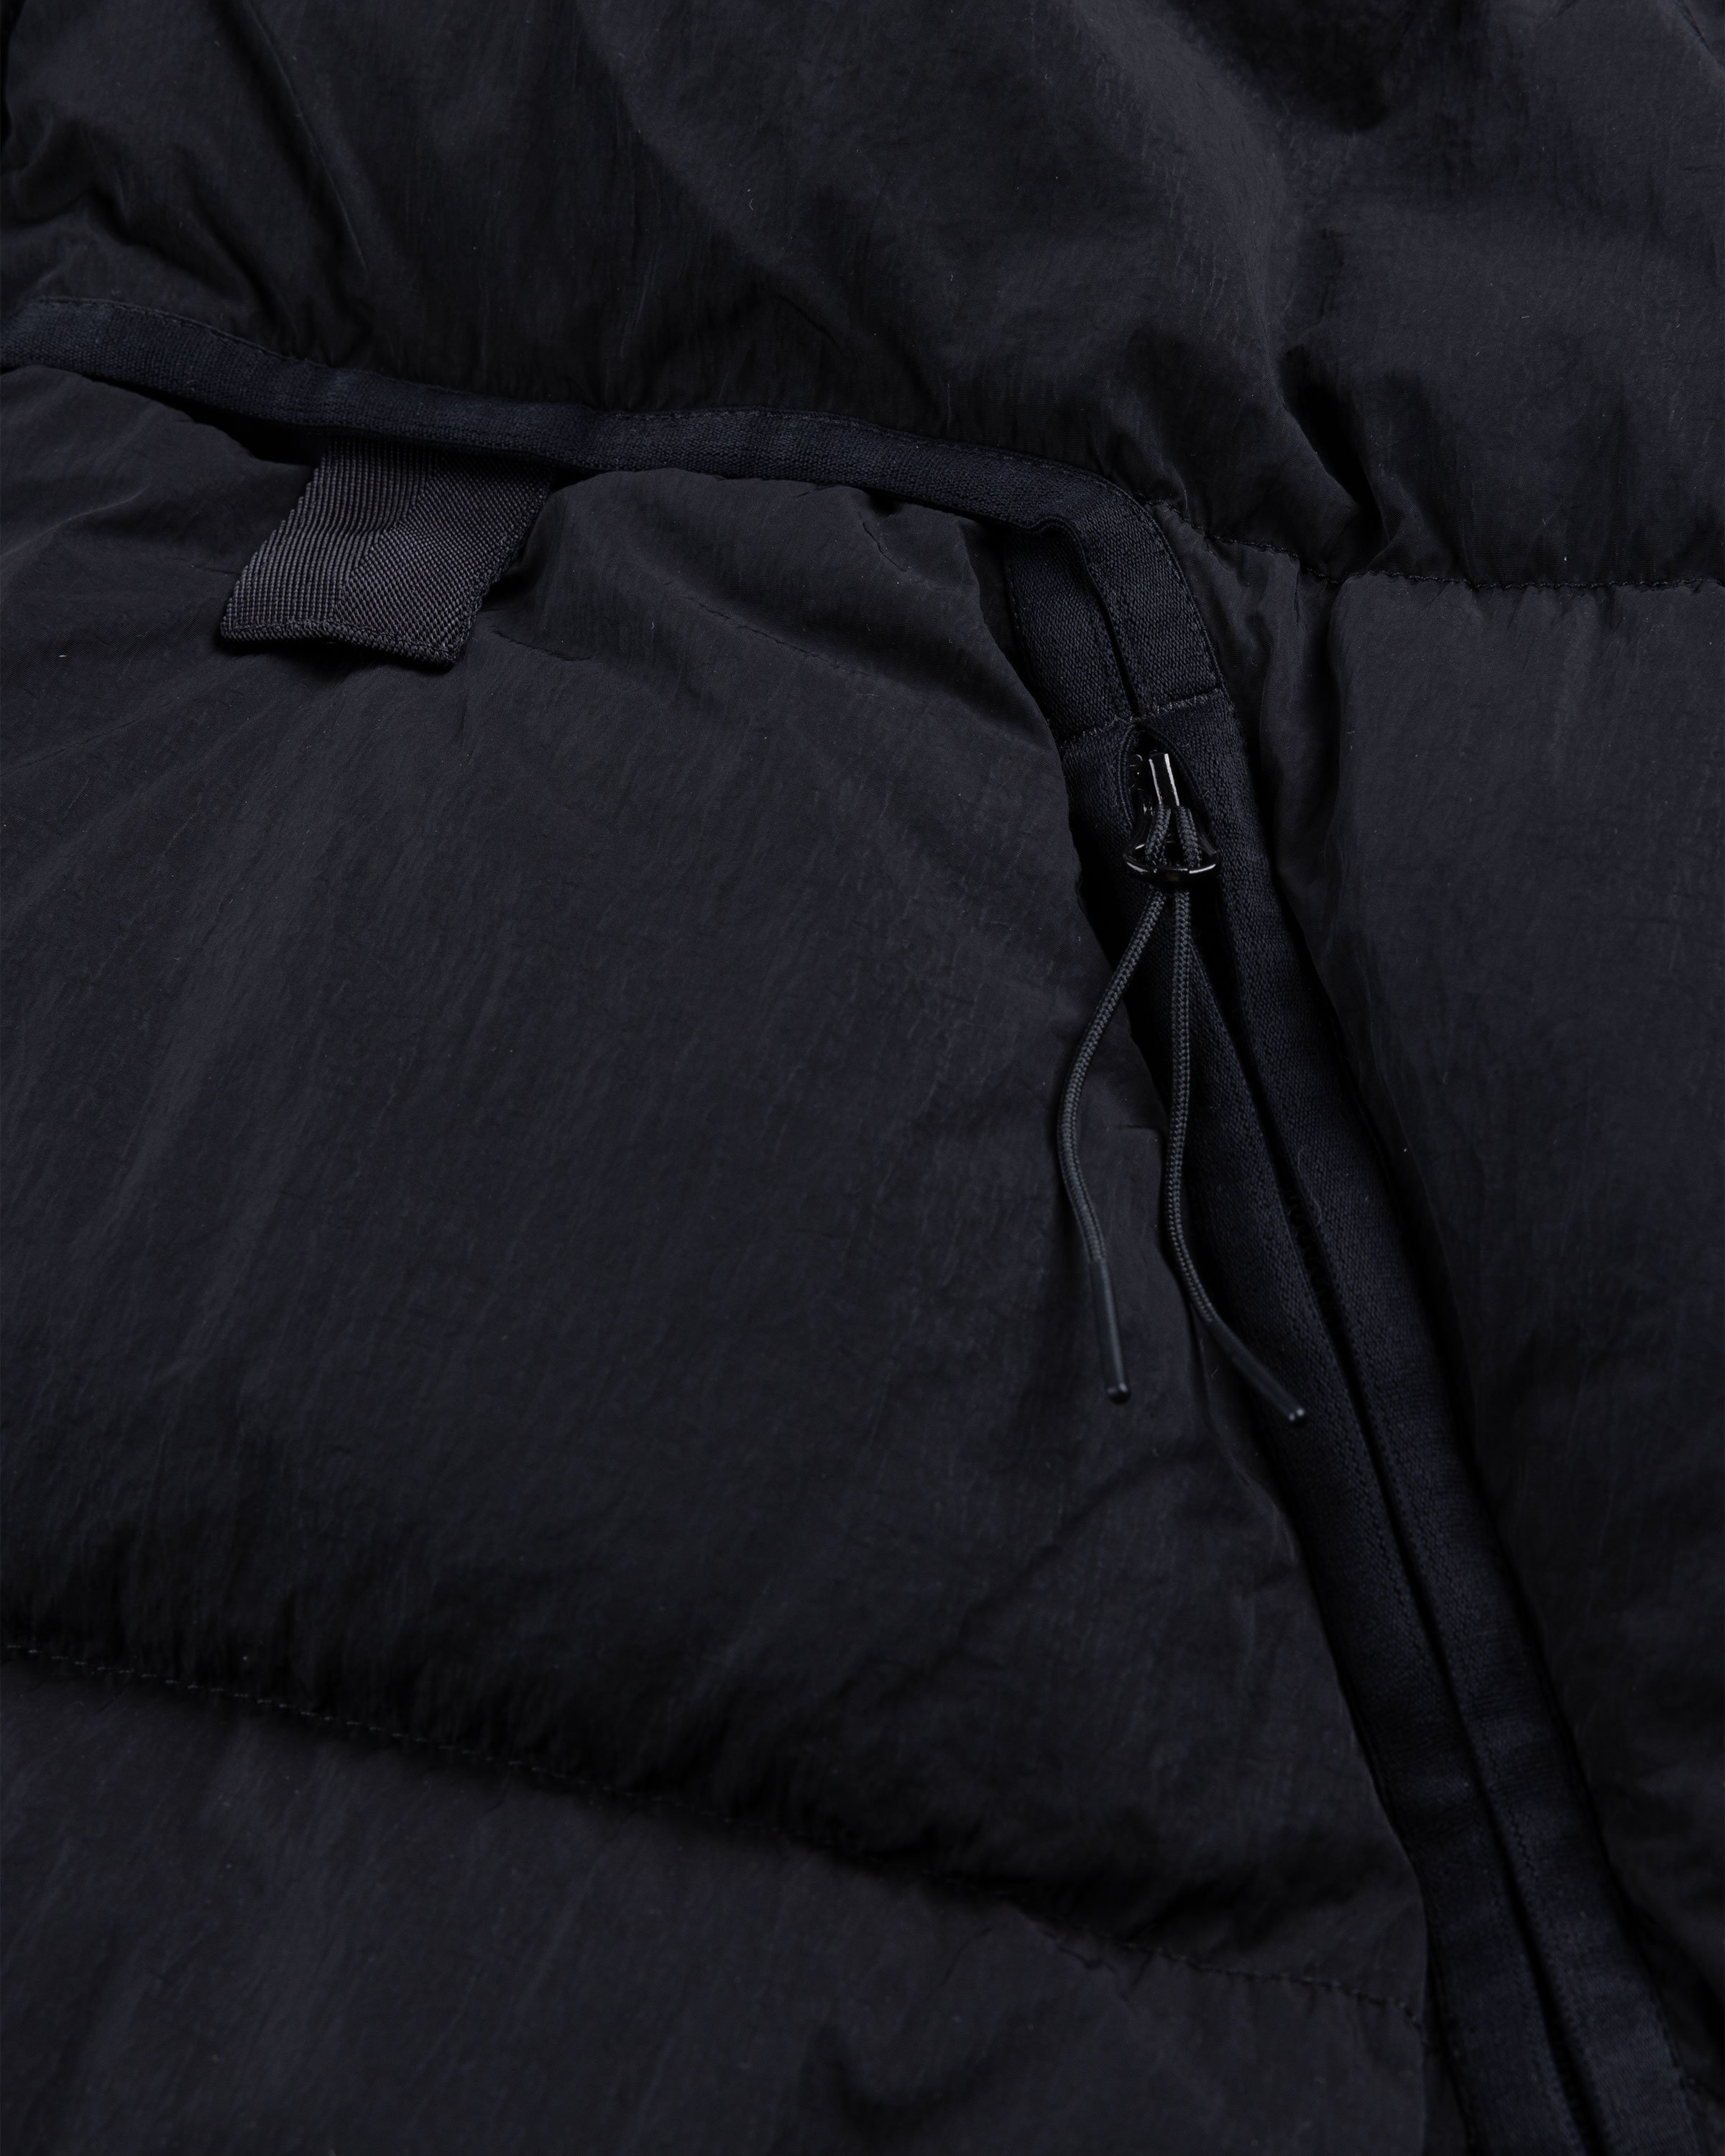 C.P. Company - Short Jacket Black - Clothing - Black - Image 6